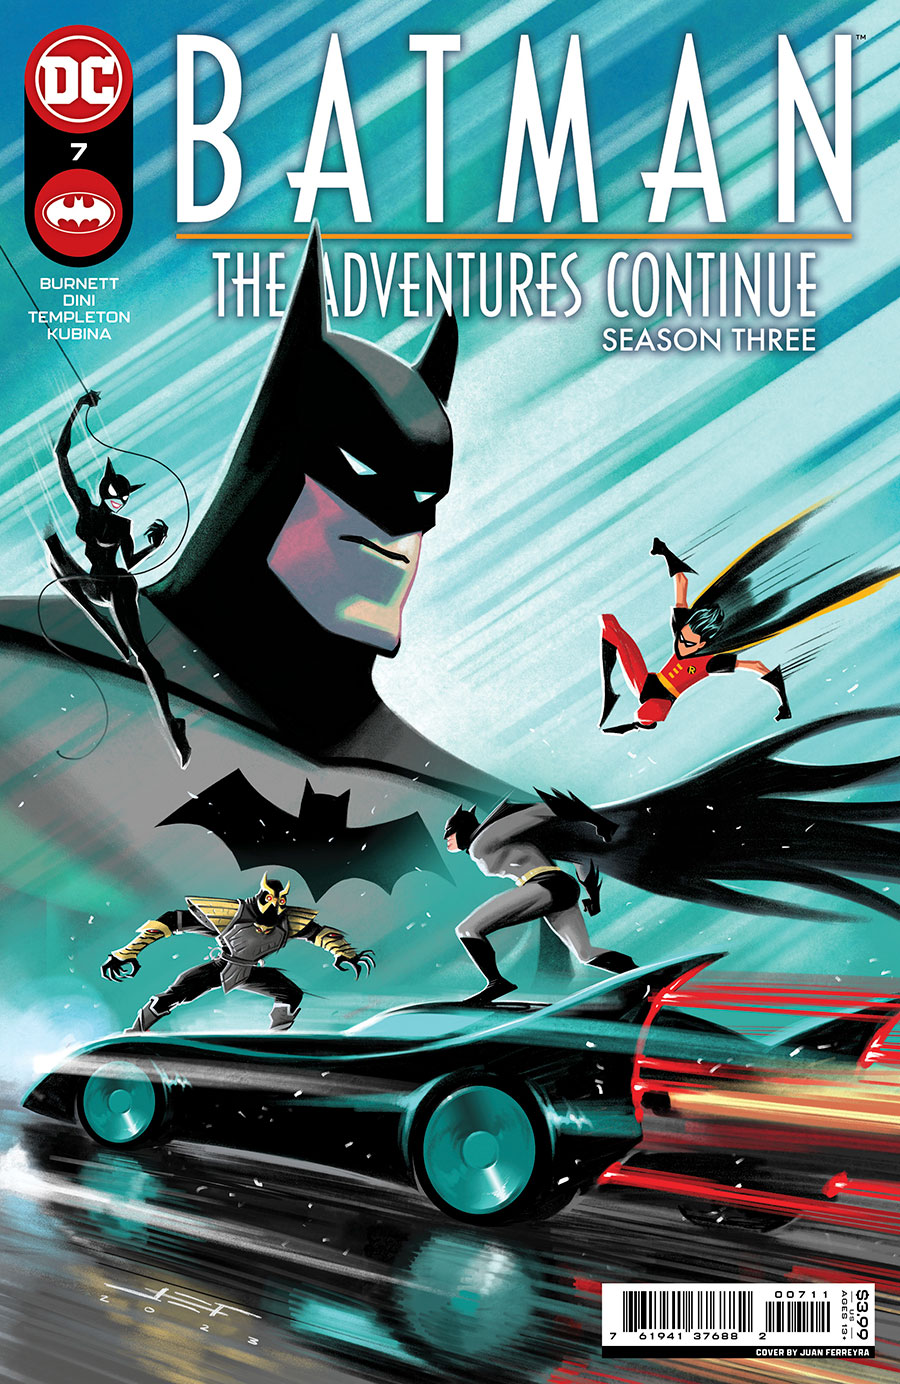 Batman The Adventures Continue Season III #7 Cover A Regular Juan Ferreyra Cover